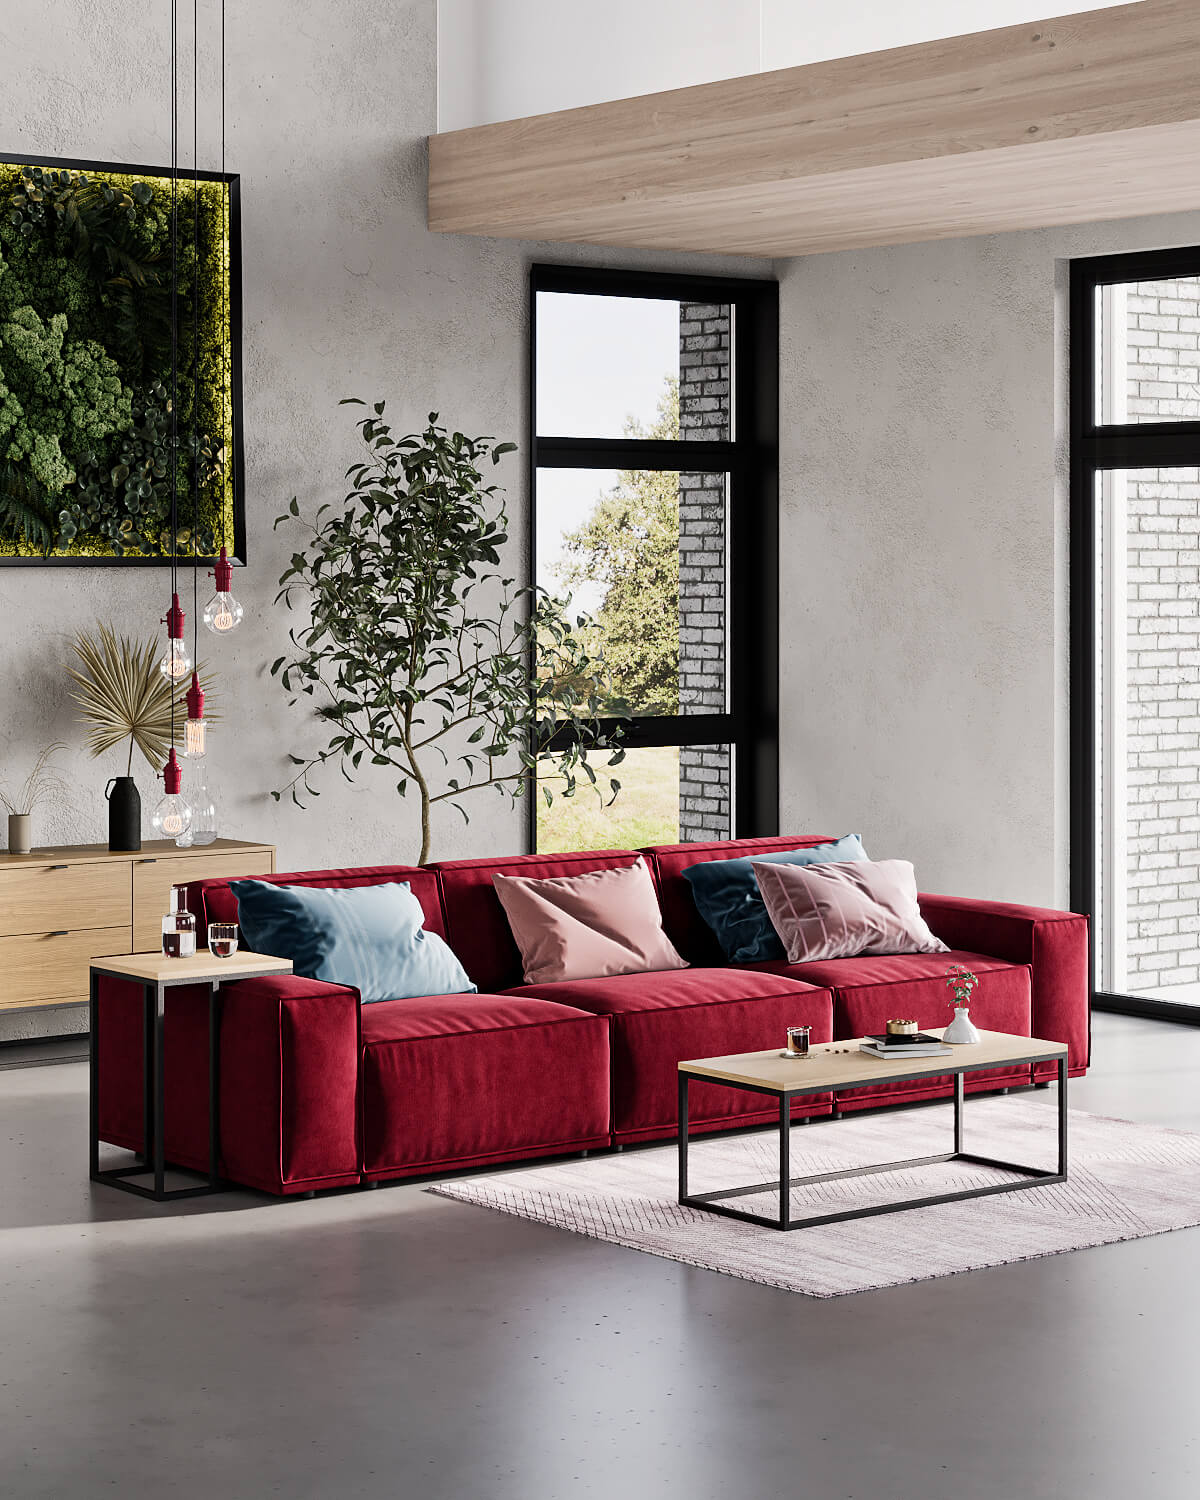 Интерьер гостиной в сканди стиле с красным диваном Jared: фото